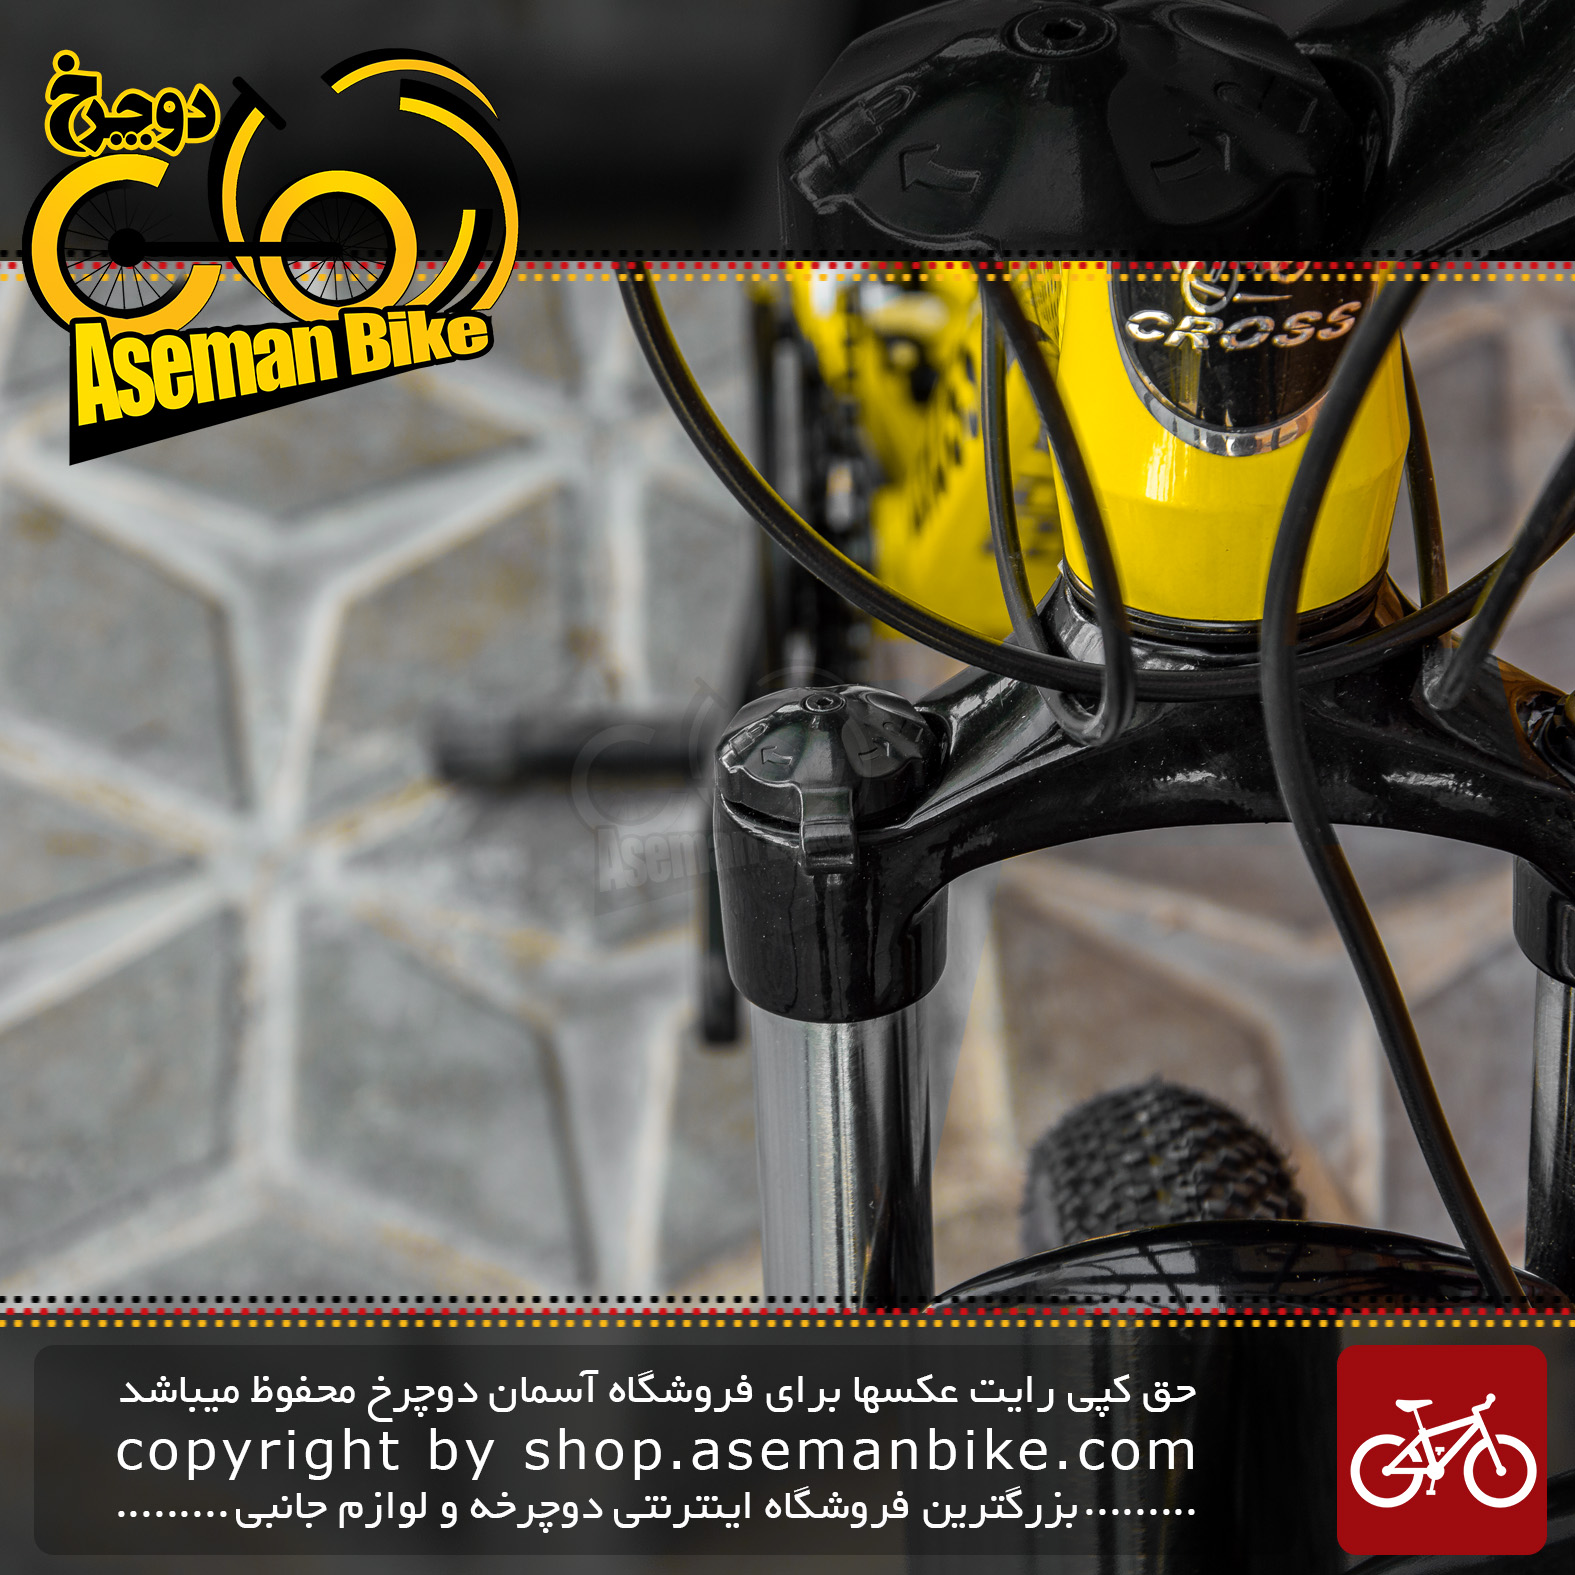 دوچرخه کوهستان برند کراس مدل ایگل سایز 27.5 رنگ زرد با سیستم دنده 27 سرعته MTB Bicycle Cross Eagle Size 27.5 Yellow 27 Speed